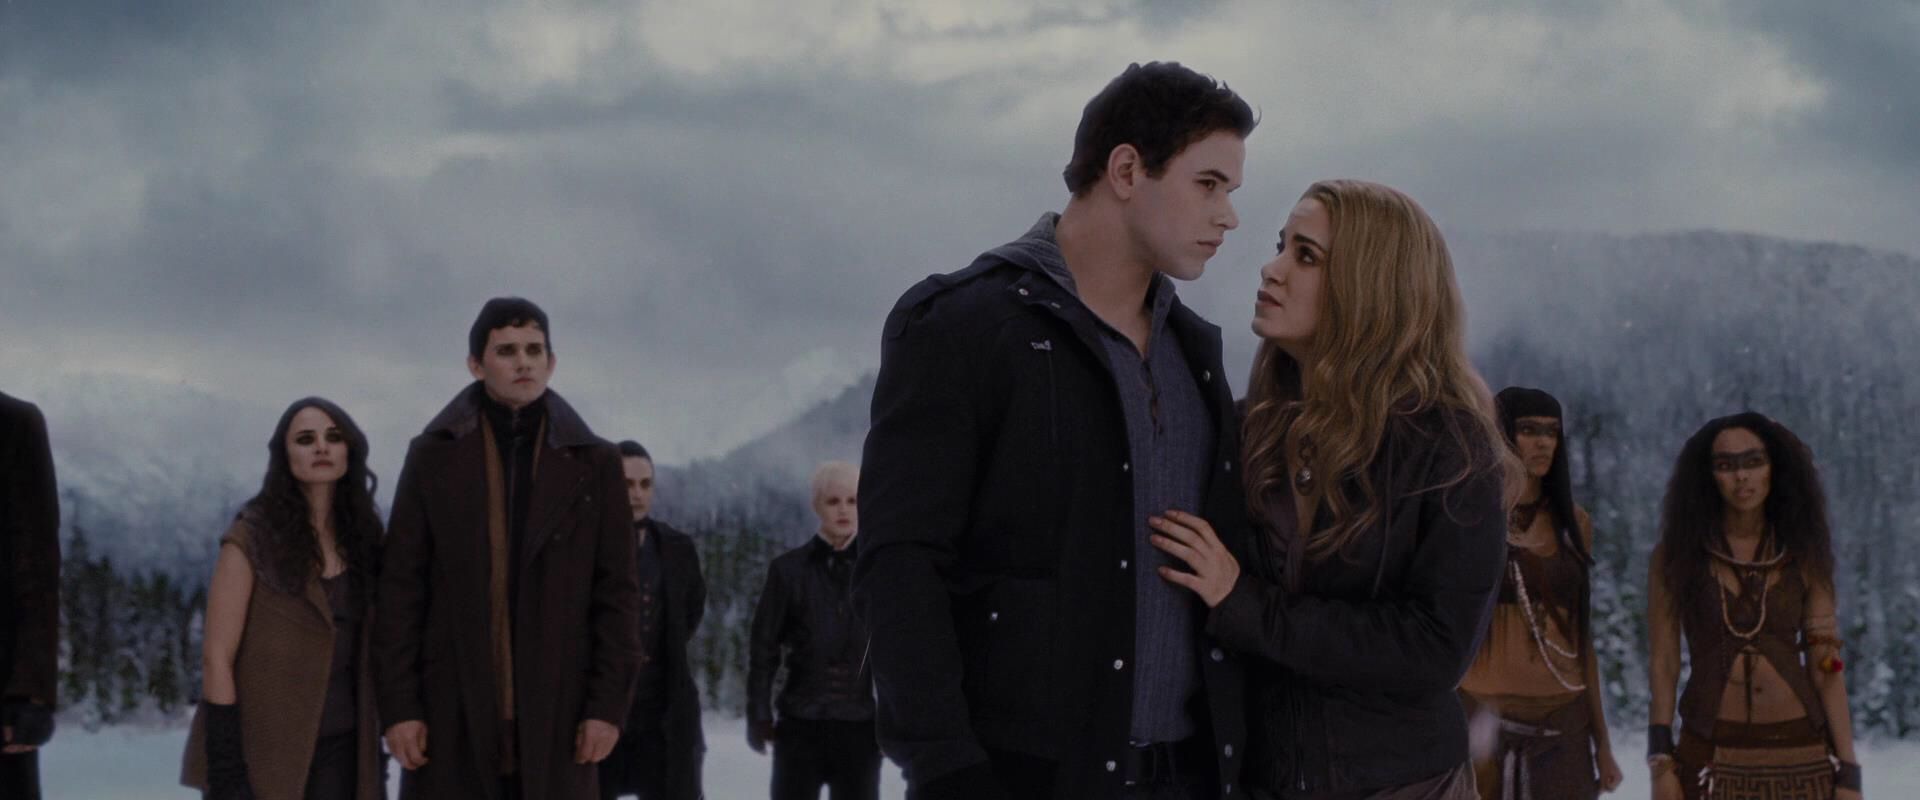 Twilight 20 Wild Details Only True Fans Know About Emmett Cullen